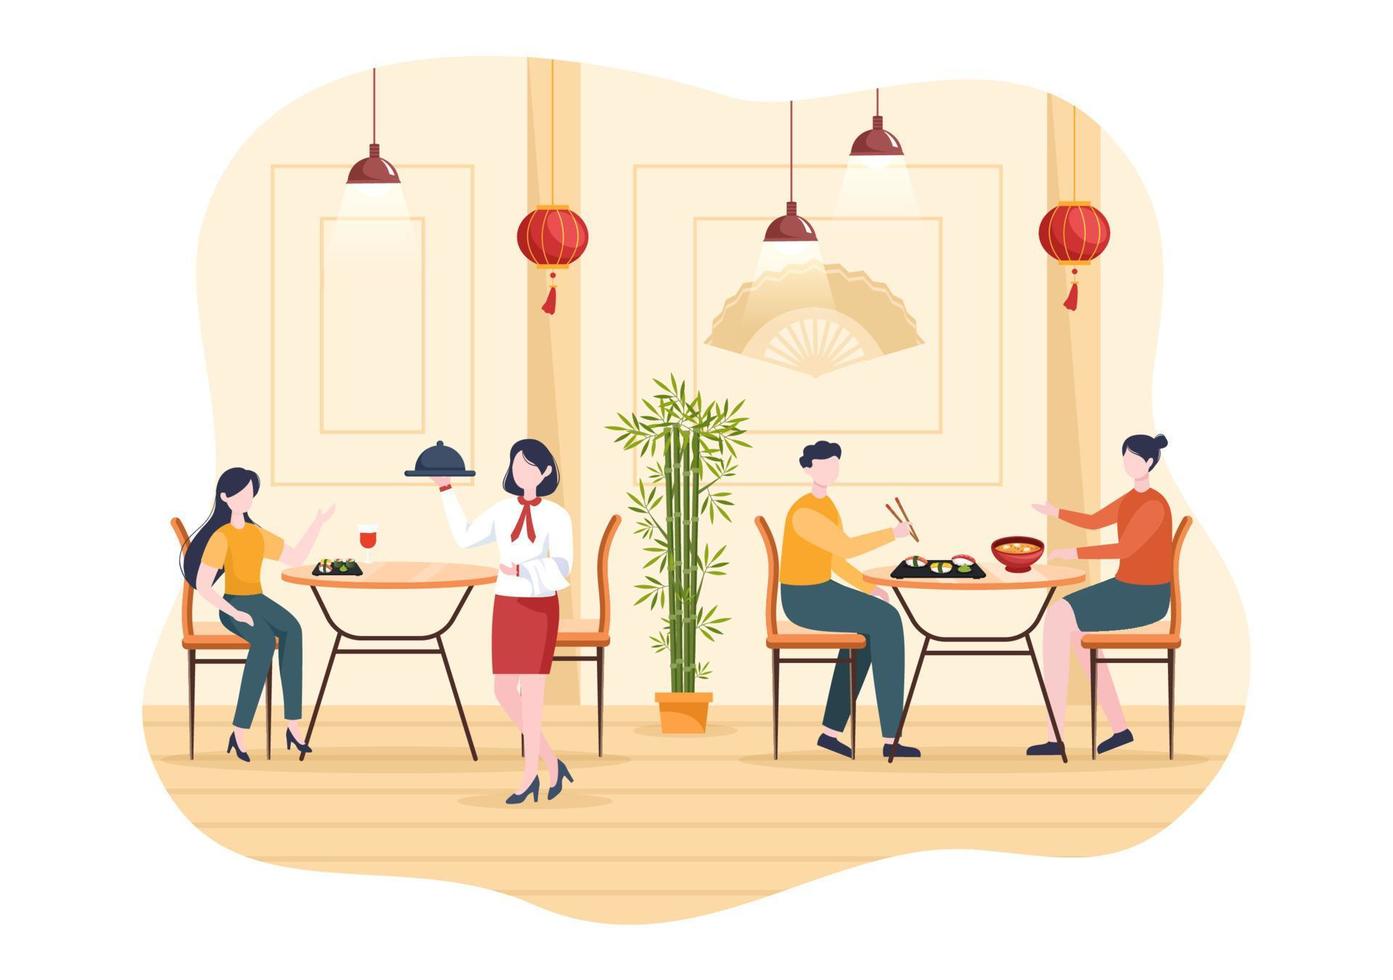 mensen die Japans eten in het restaurant met verschillende heerlijke gerechten zoals sushi op een bord, sashimi roll en andere in vlakke stijl cartoon afbeelding vector